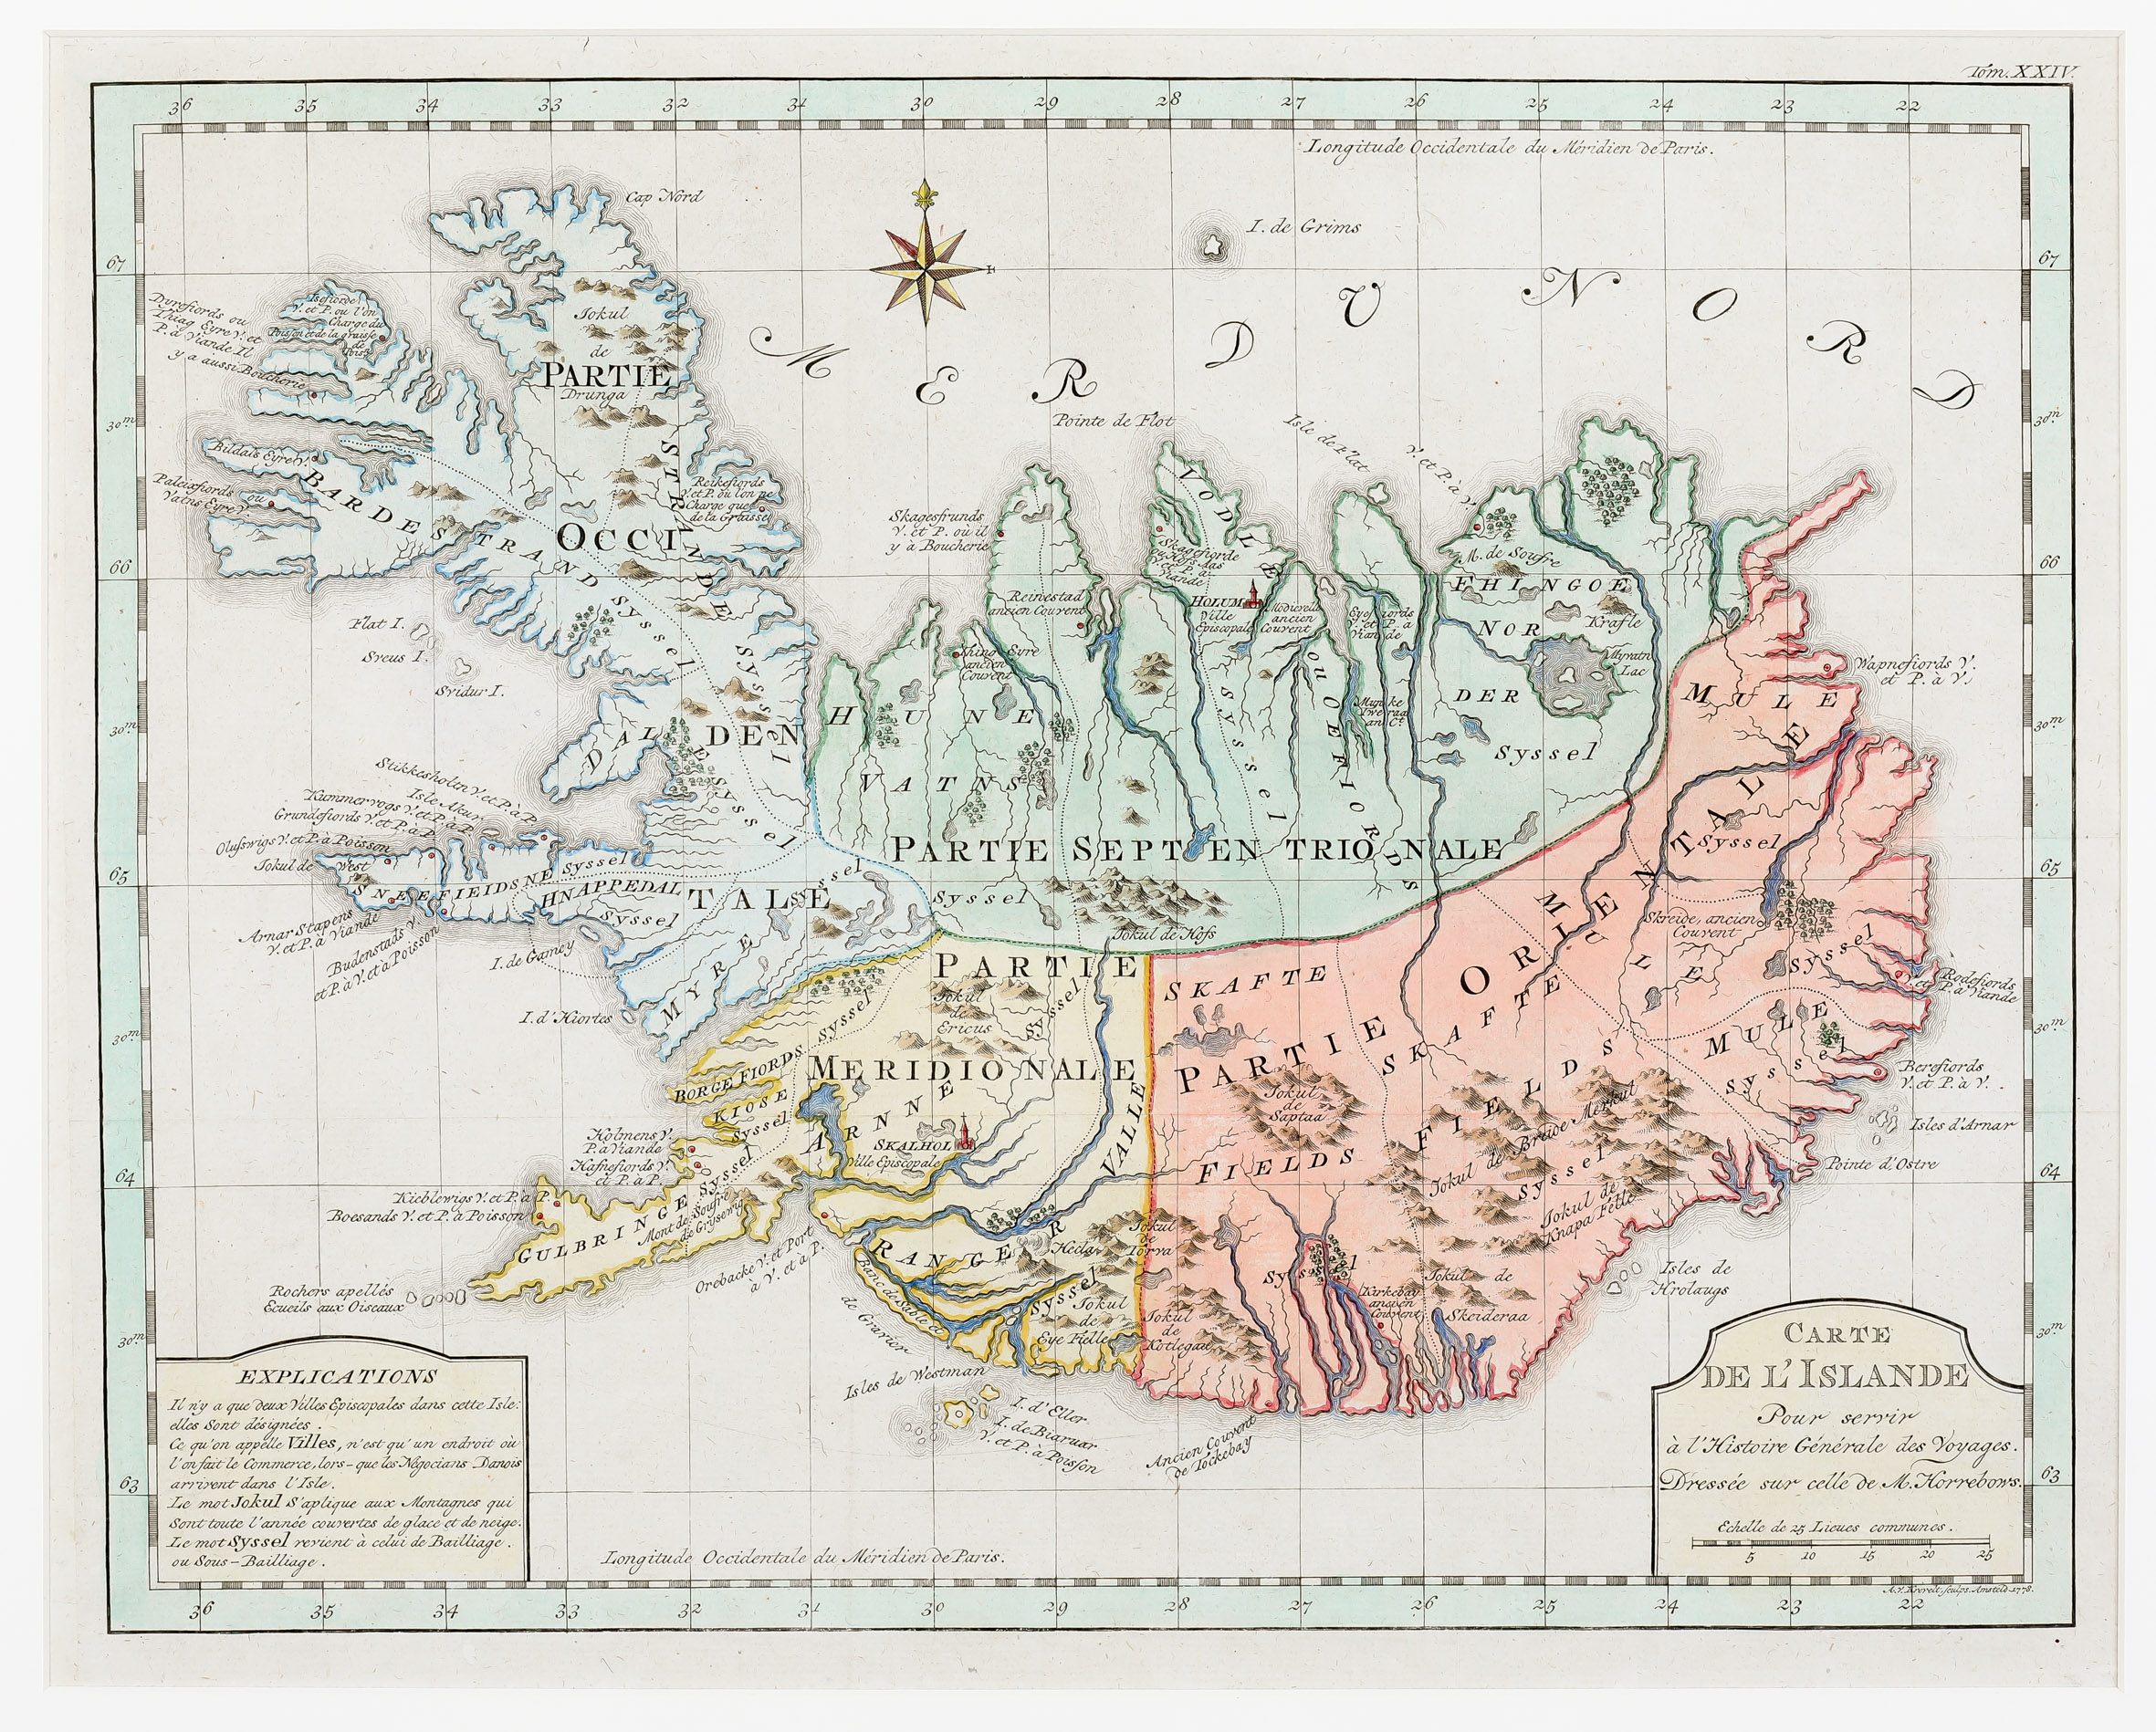 115. Carte de l‘Islande pour servir a l’histoire generale